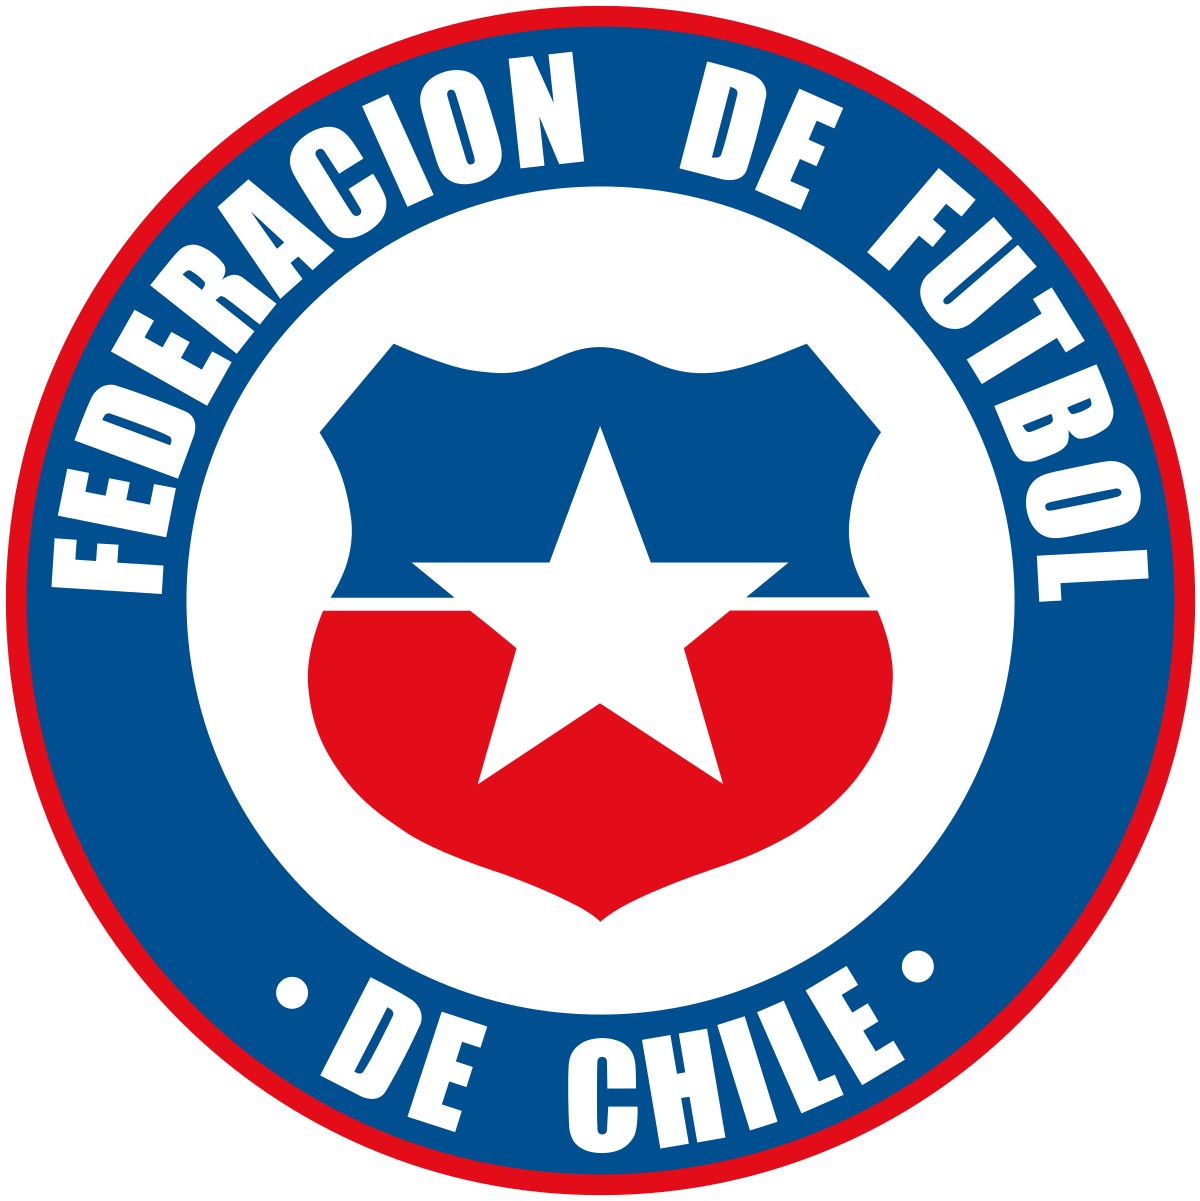 サッカーチリ代表 - Wikipedia